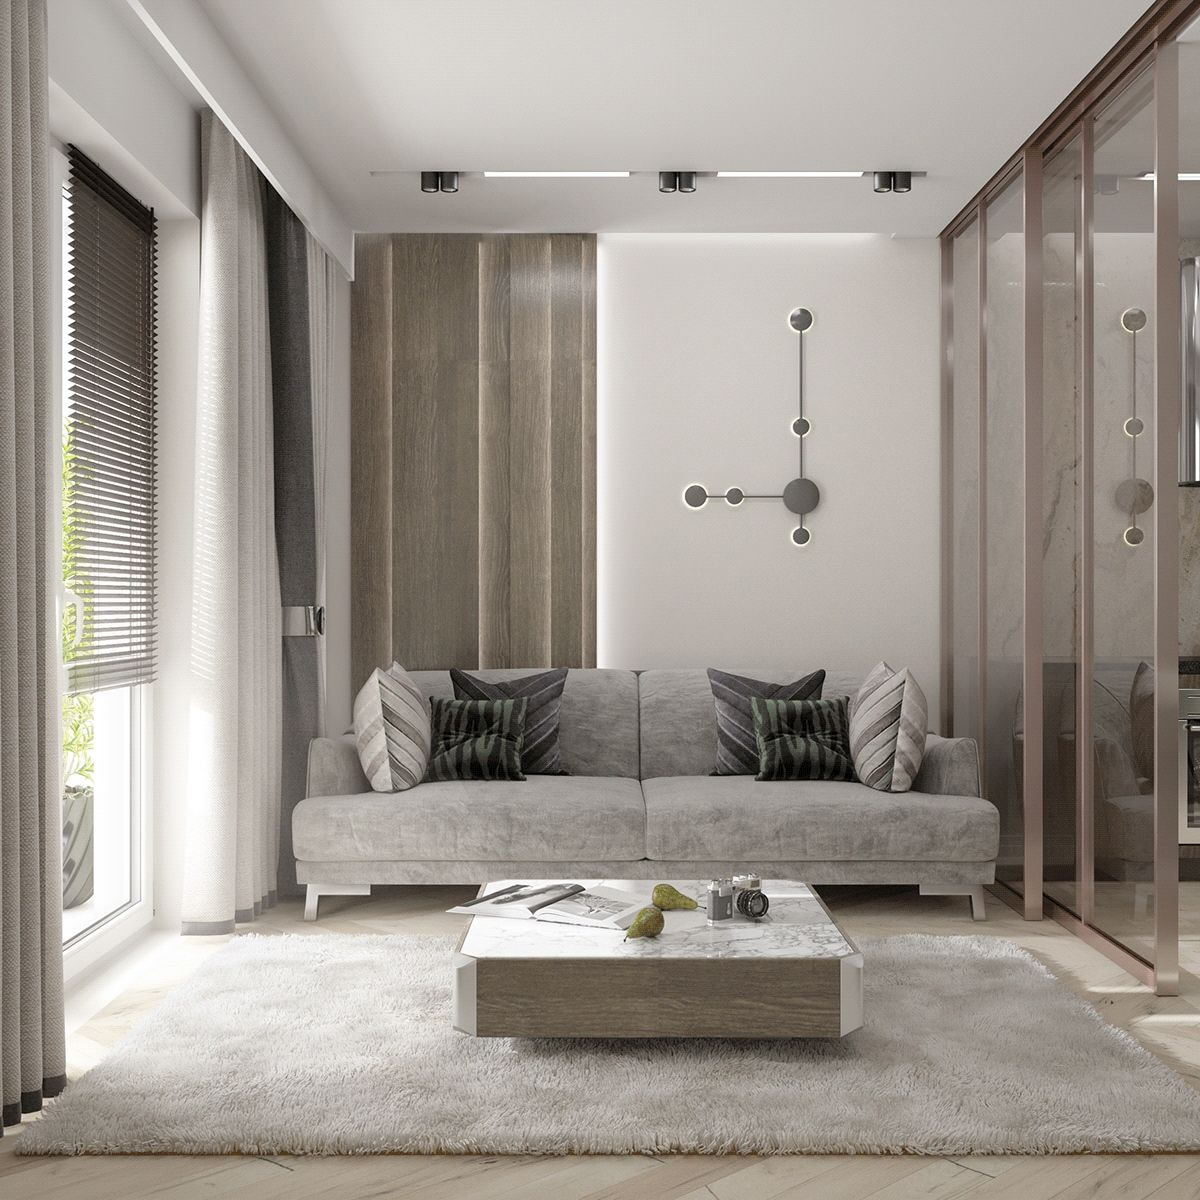 Thiết kế nội thất căn hộ chung cư hiện đại màu xám